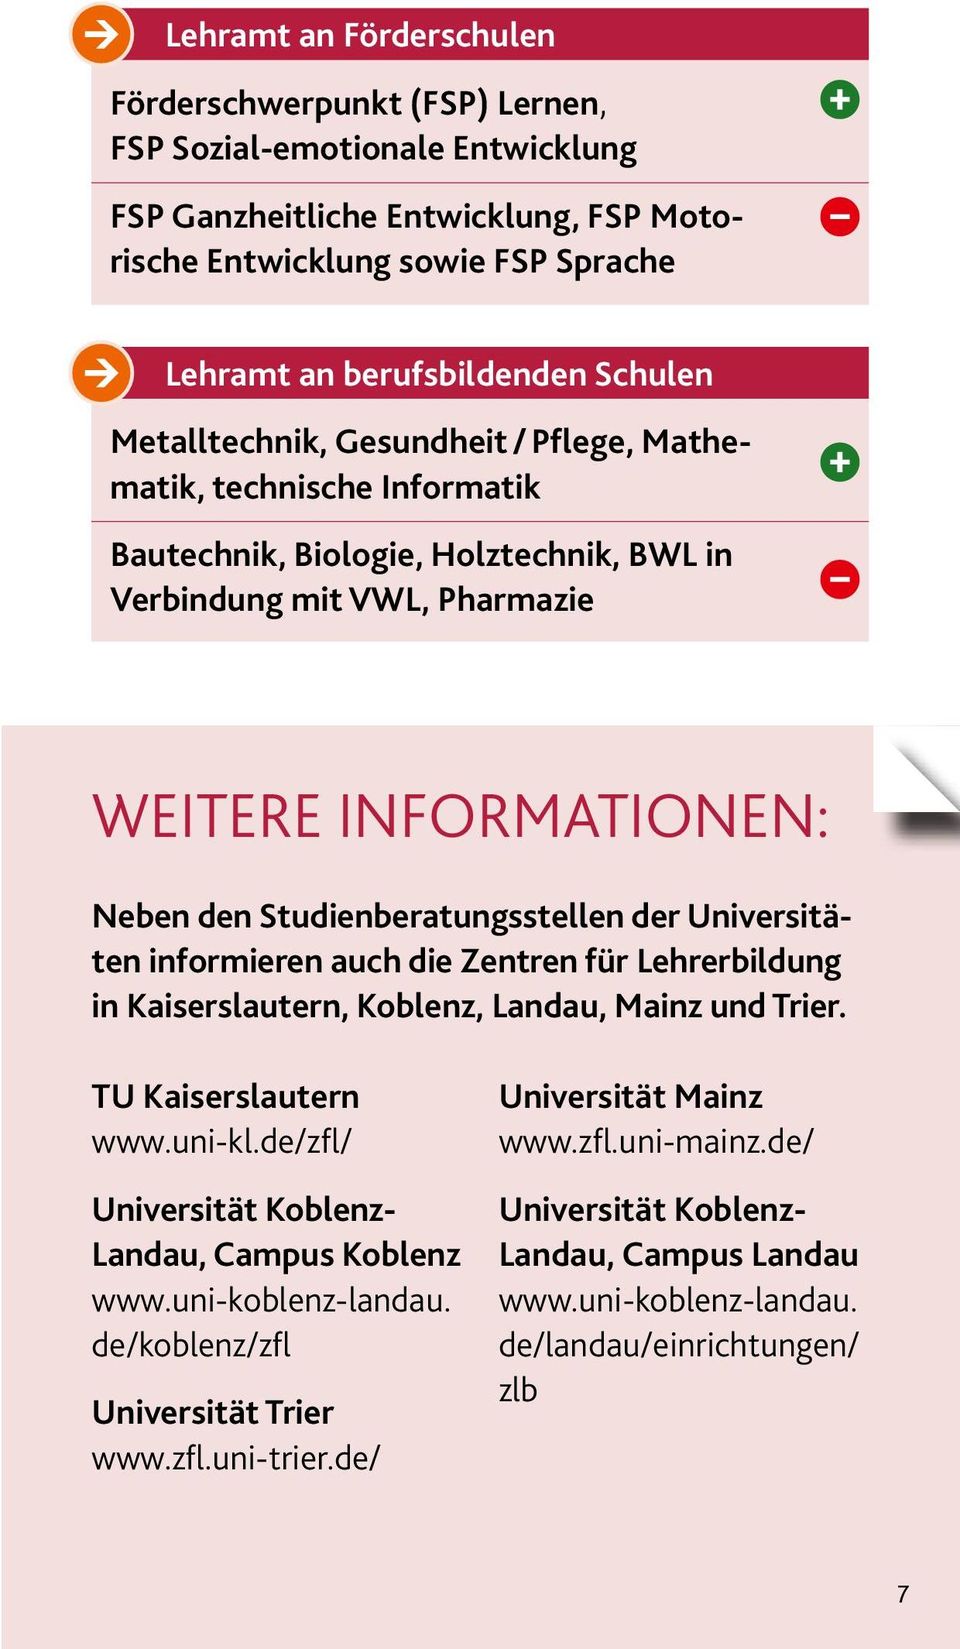 Studienberatungsstellen der Universitäten informieren auch die Zentren für Lehrerbildung in Kaiserslautern, Koblenz, Landau, Mainz und Trier. TU Kaiserslautern www.uni-kl.